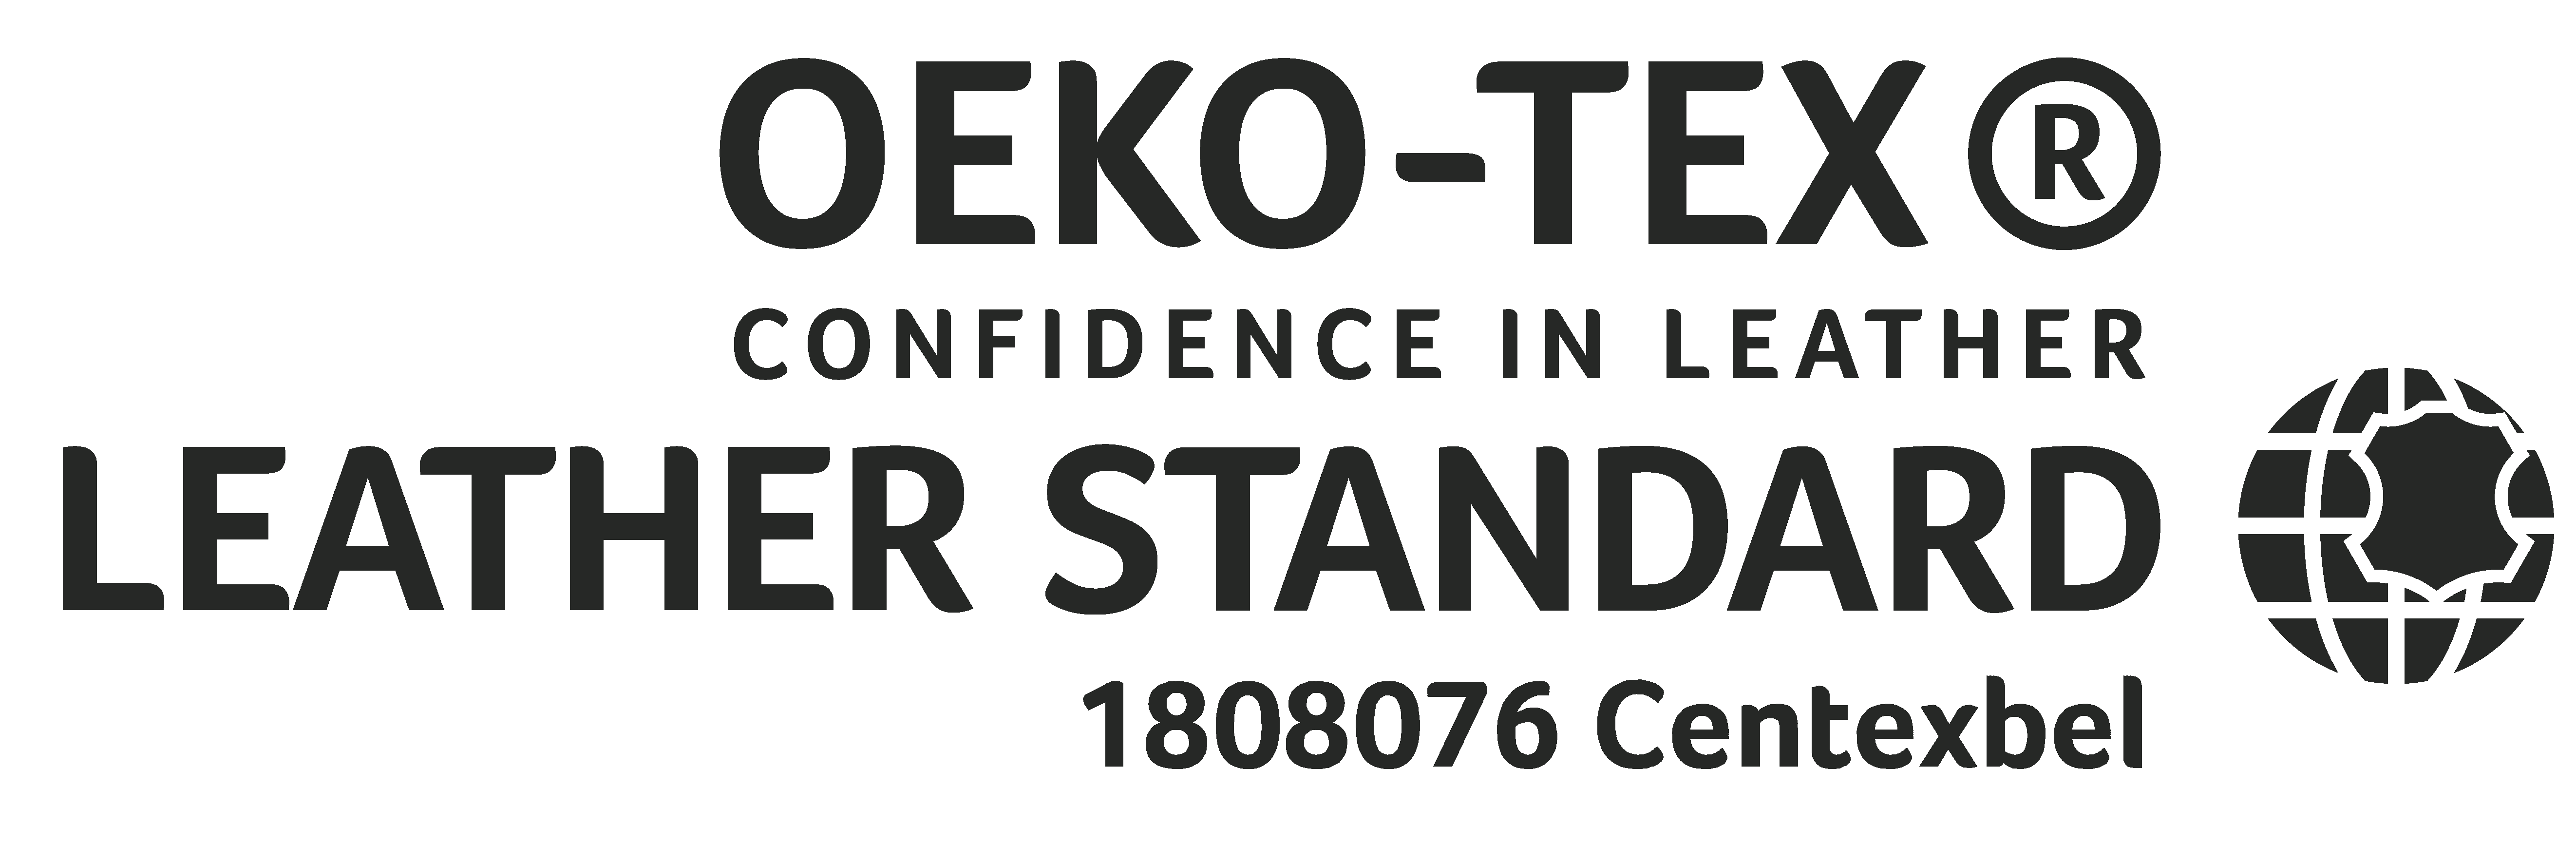 REBIL-Group-OEKO-TEX-Leather-Standard.png